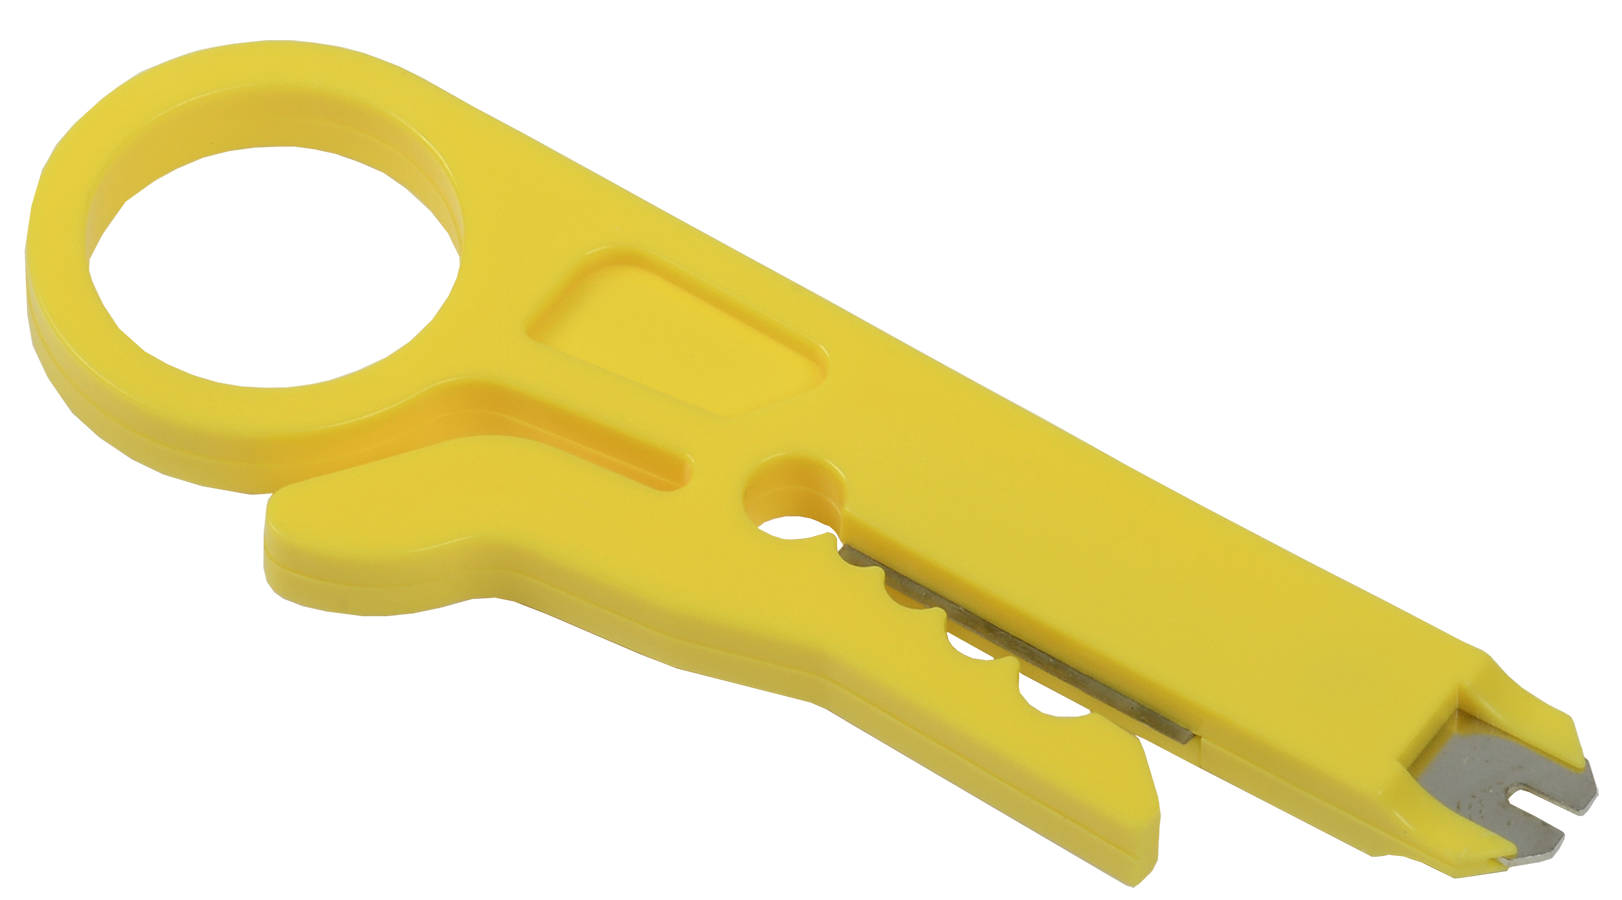 ITK Инструмент для зачистки, обрезки и заделки 110 витой пары жёлтый